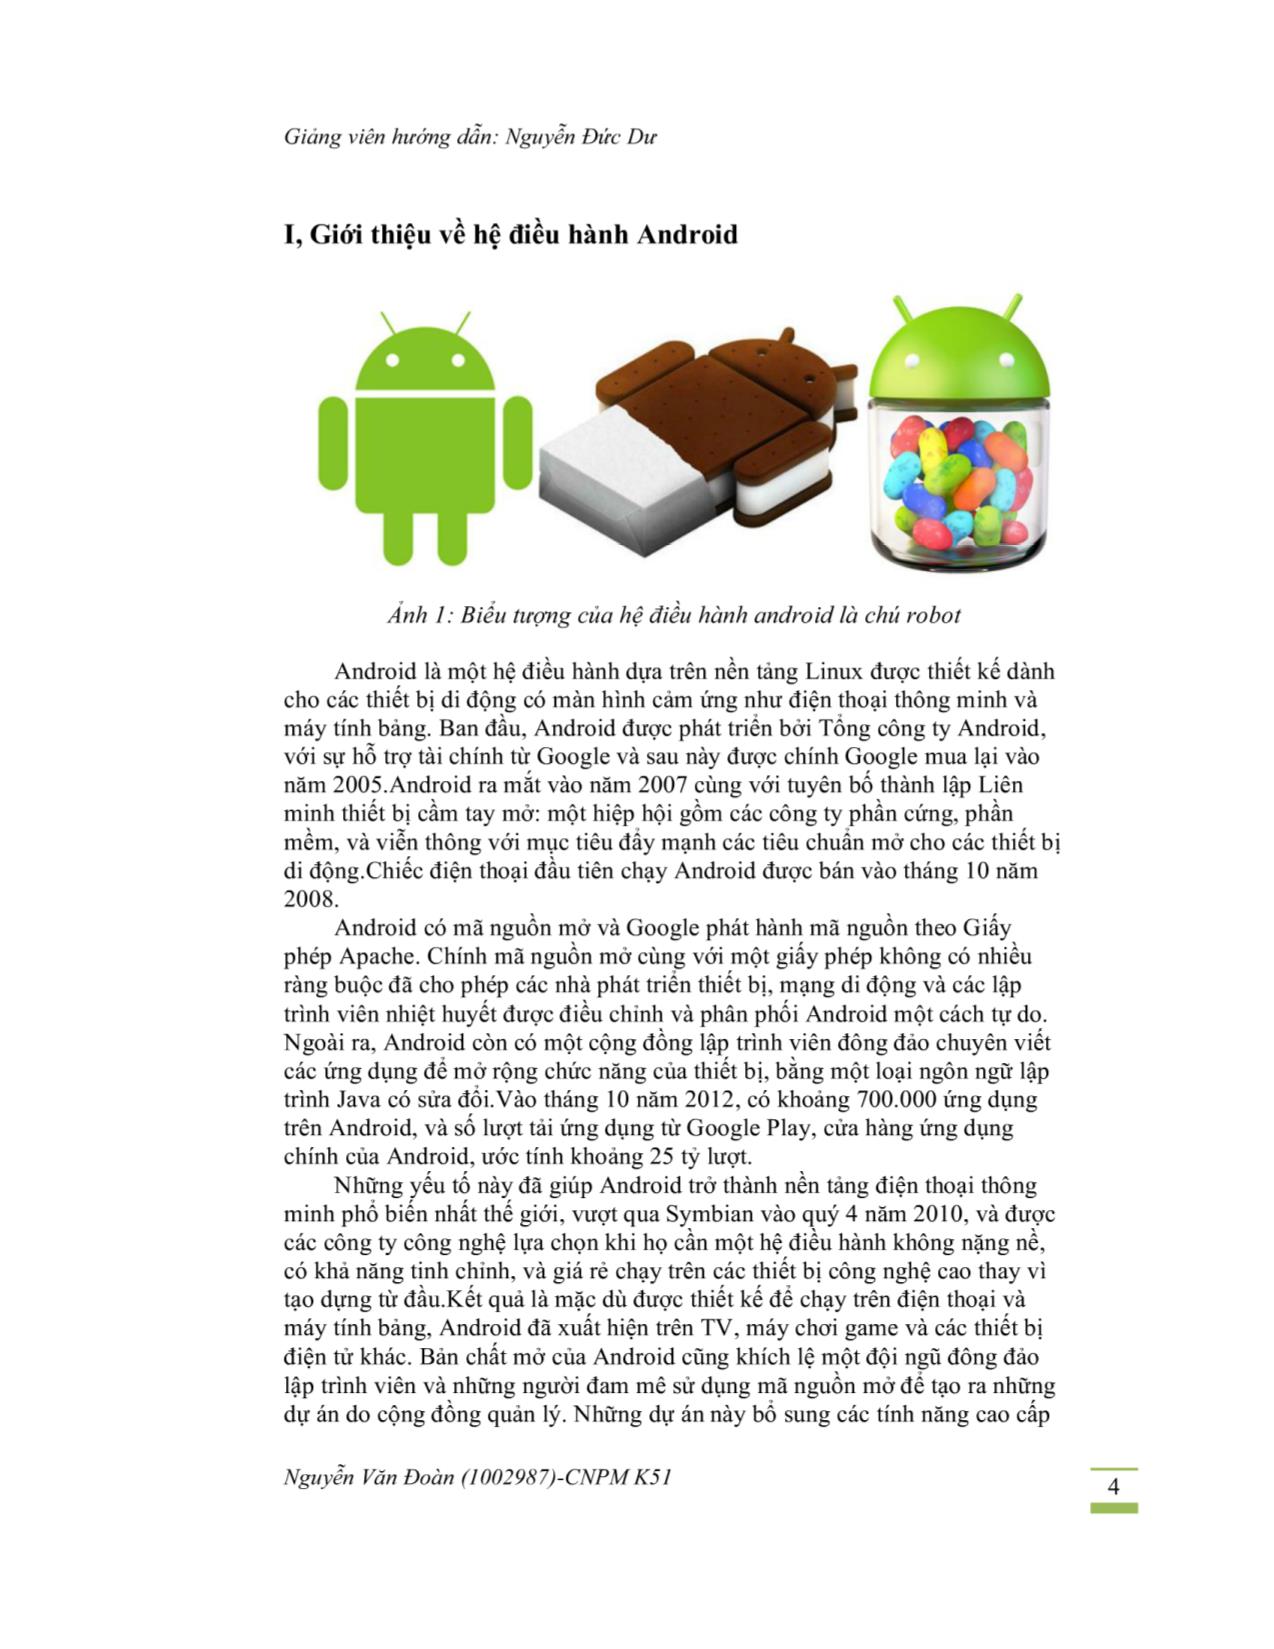 Đề tài Tìm hiểu hệ điều hành Android trang 3